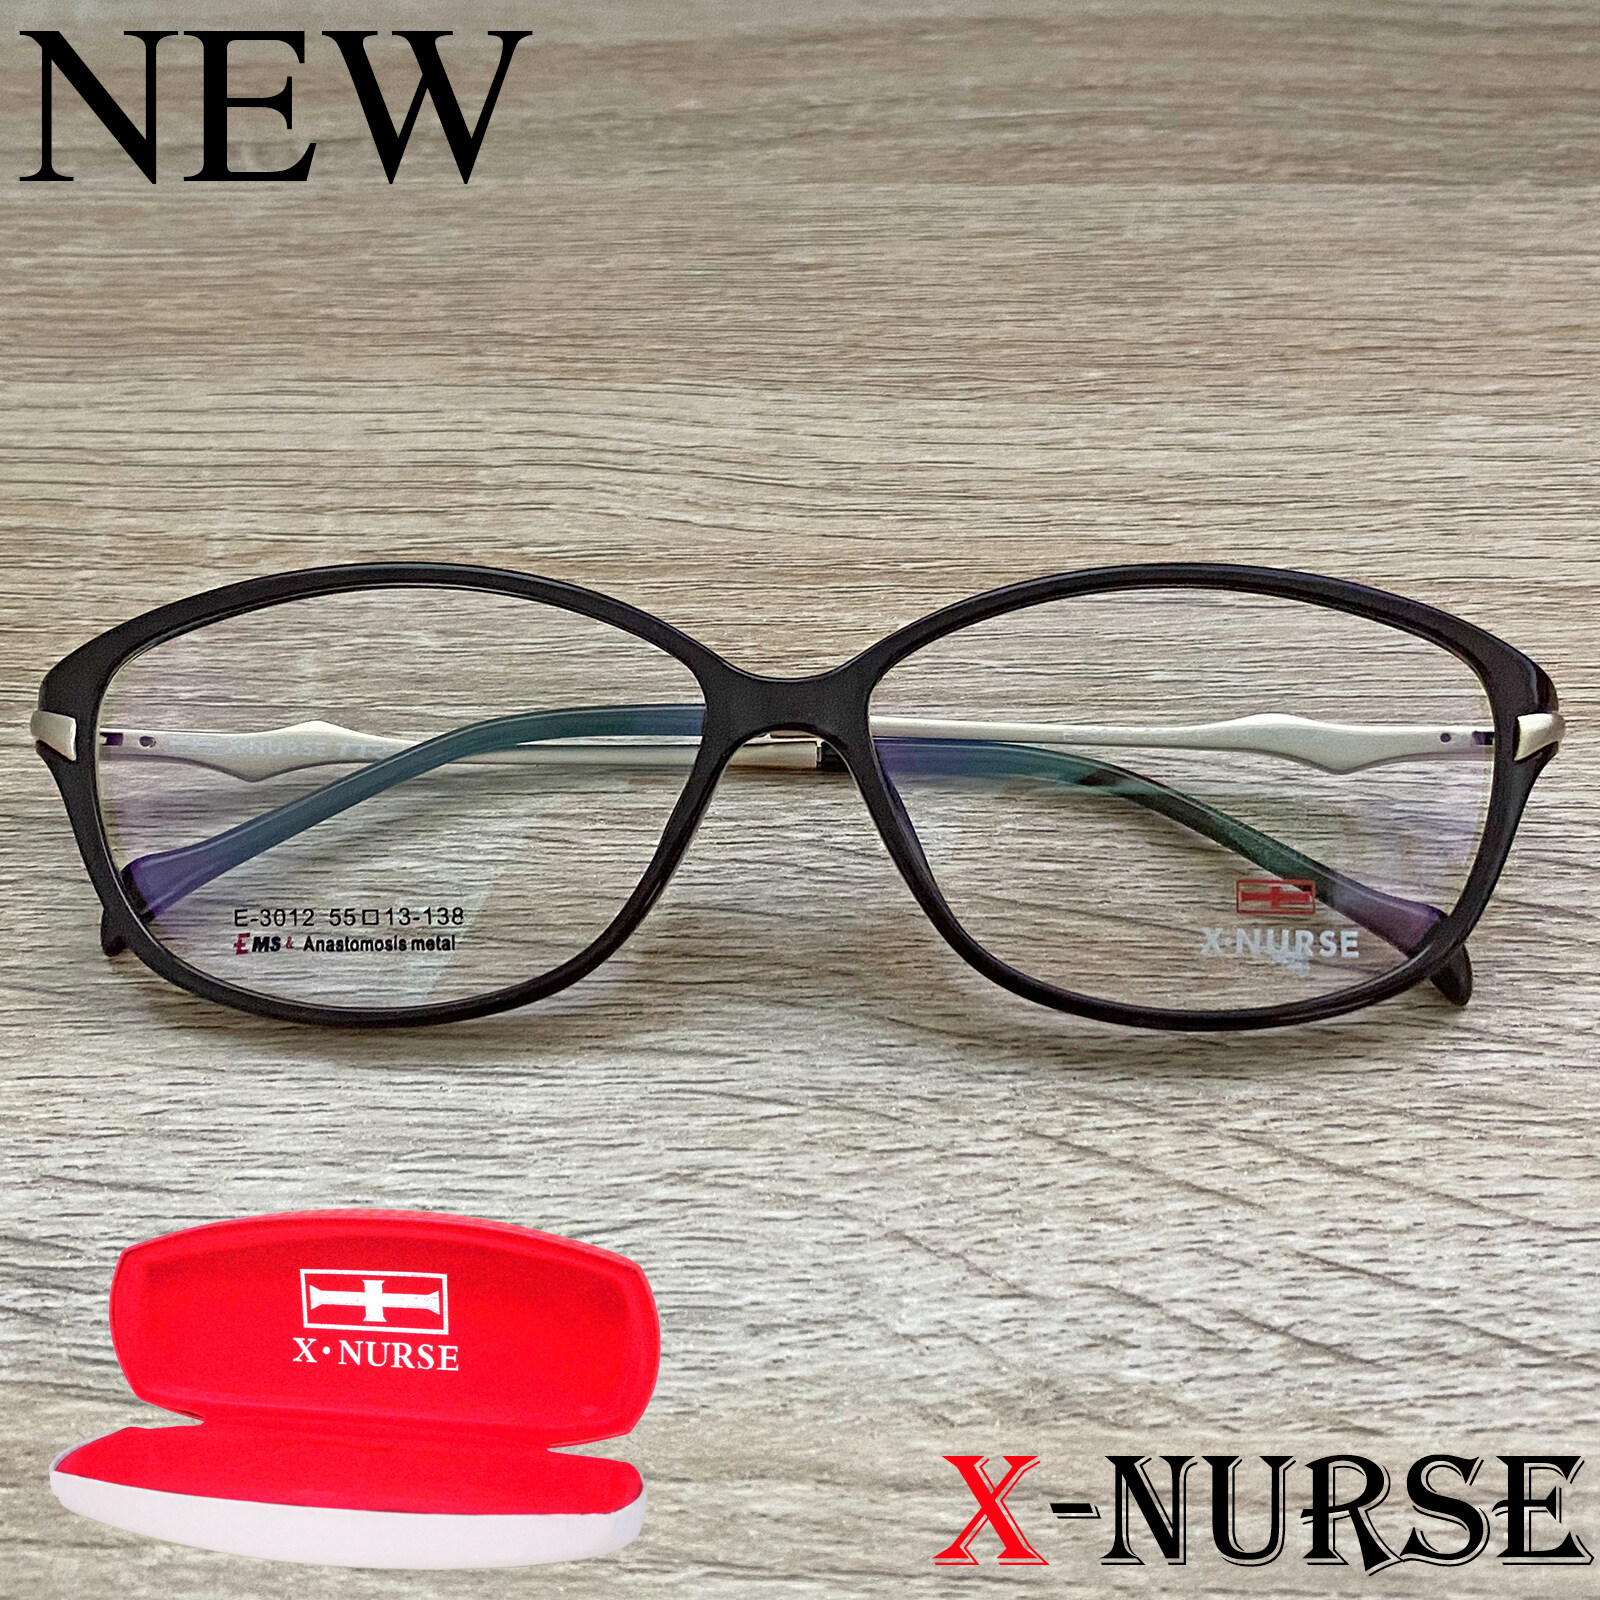 กรอบแว่นตา แว่นตาสำหรับตัดเลนส์ ผู้ชาย ผู้หญิง Fashion รุ่น X-NURSE 3012 สีน้ำตาล ทรงรี ขาสปริง วัสดุ พลาสติก พีซี เกรด เอ รับตัดเลนส์สายตาเลนส์กันแดดทุกชนิด